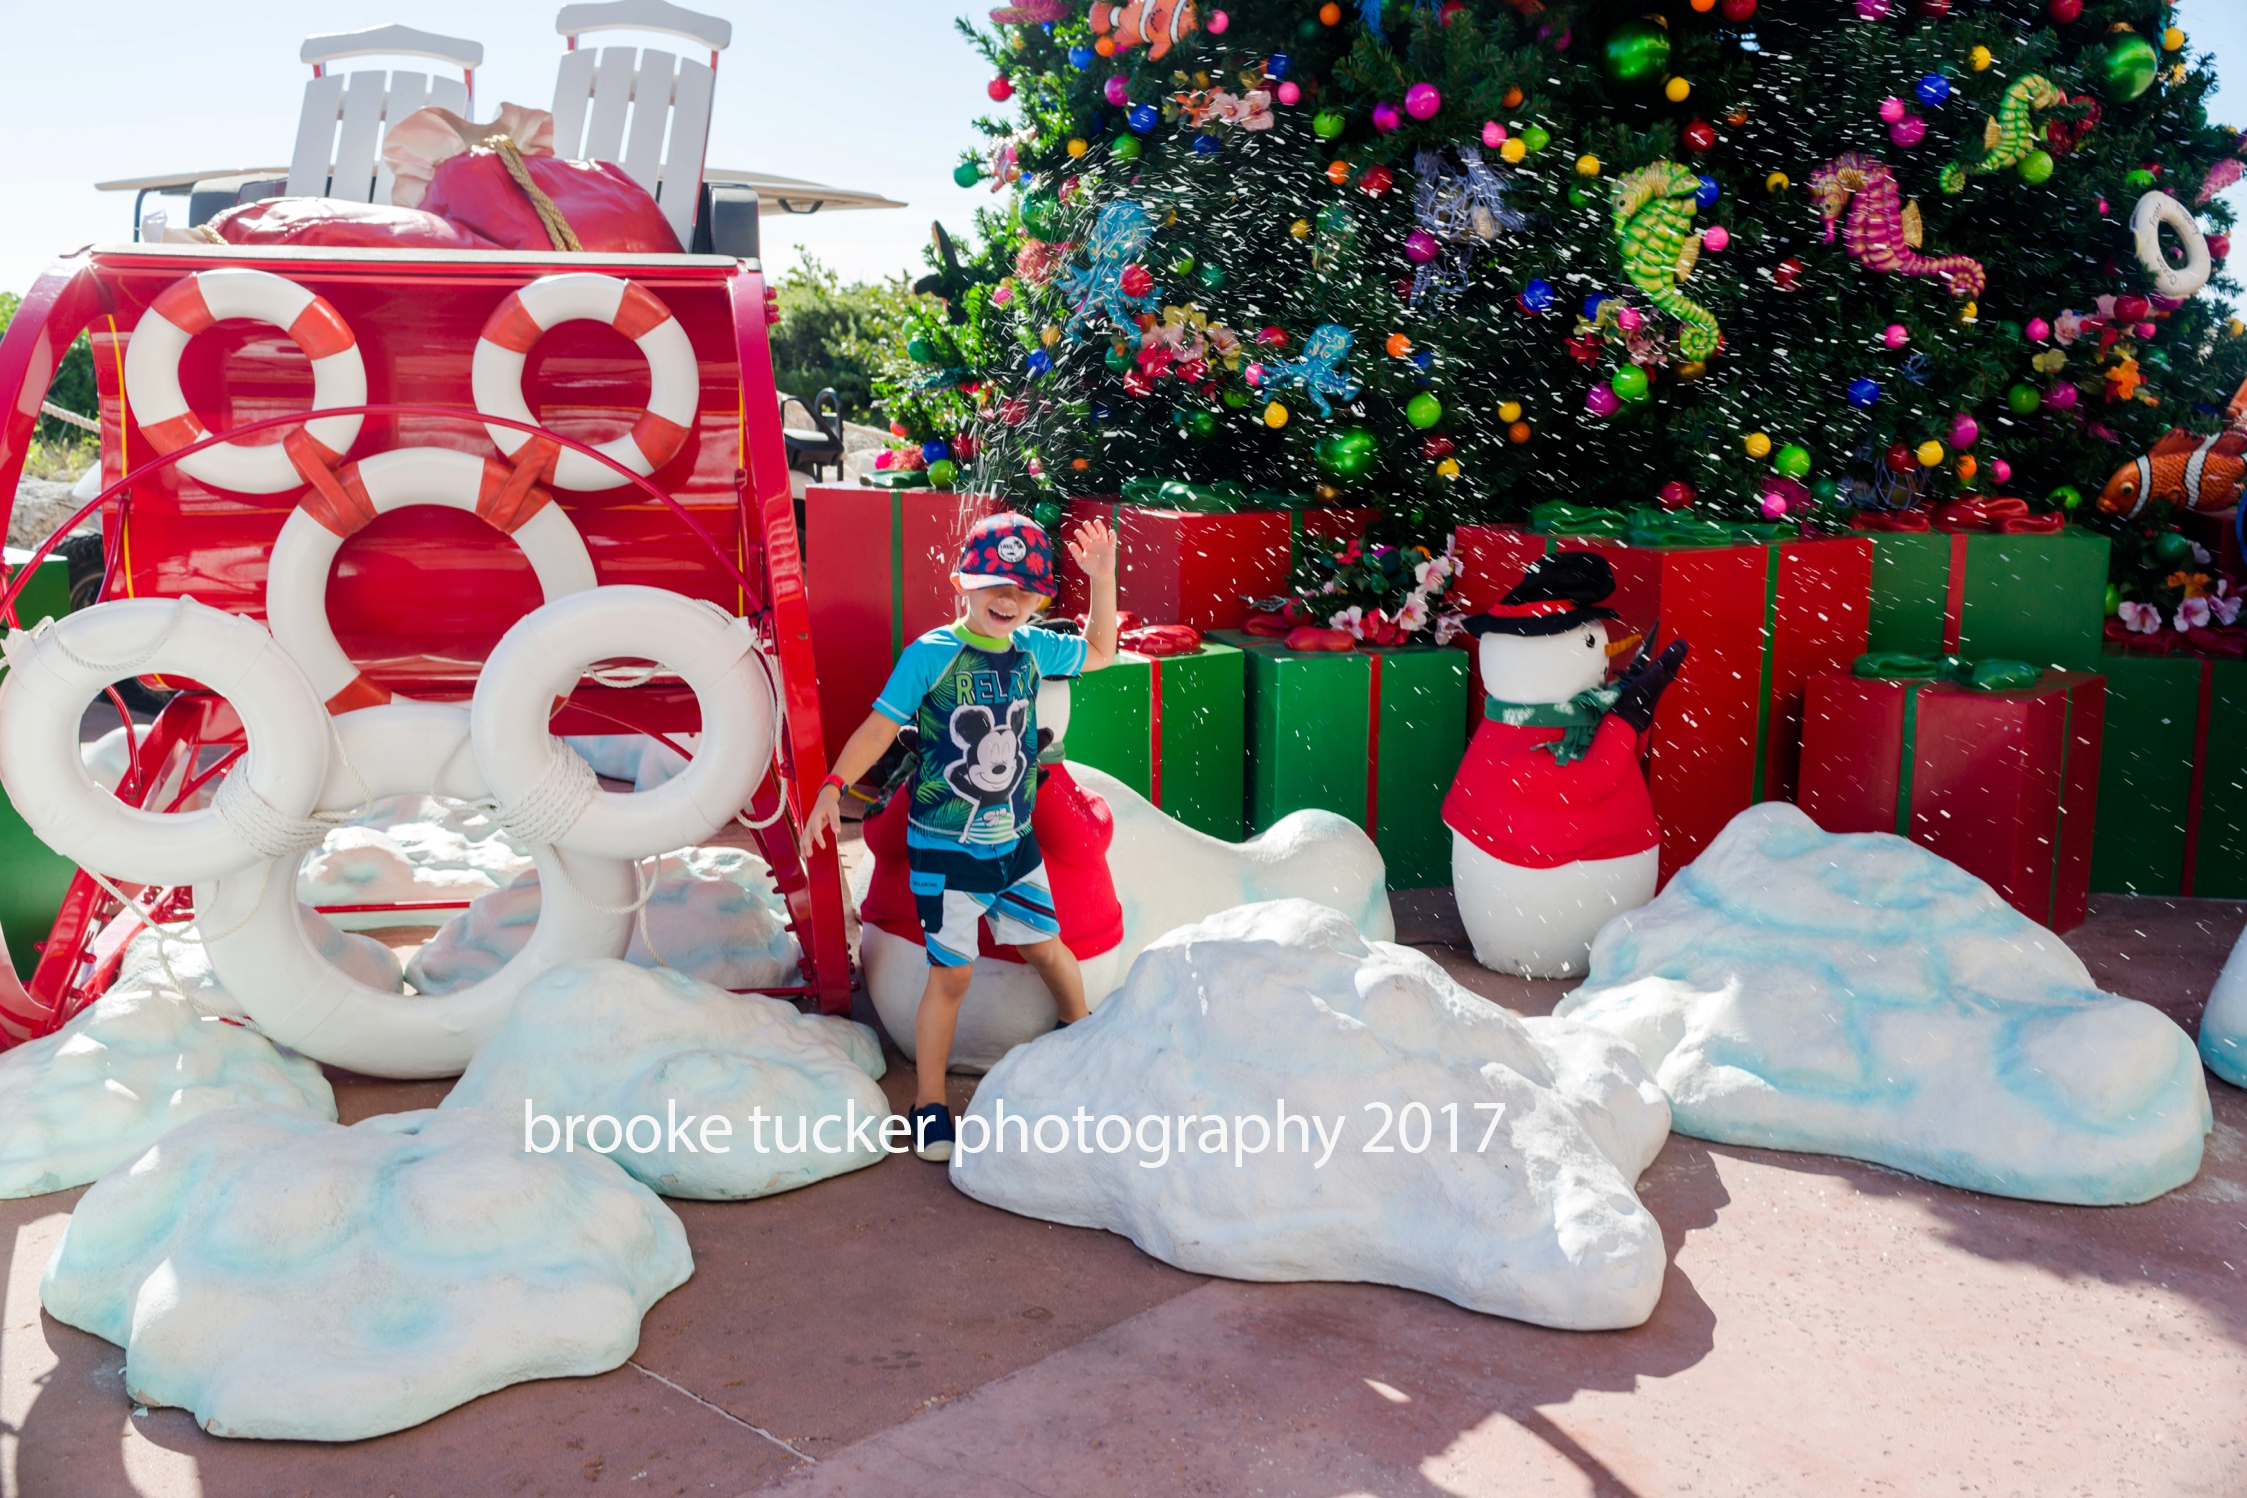 Disney Bahamian Cruise, Disney Dream, Brooke Tucker Photography